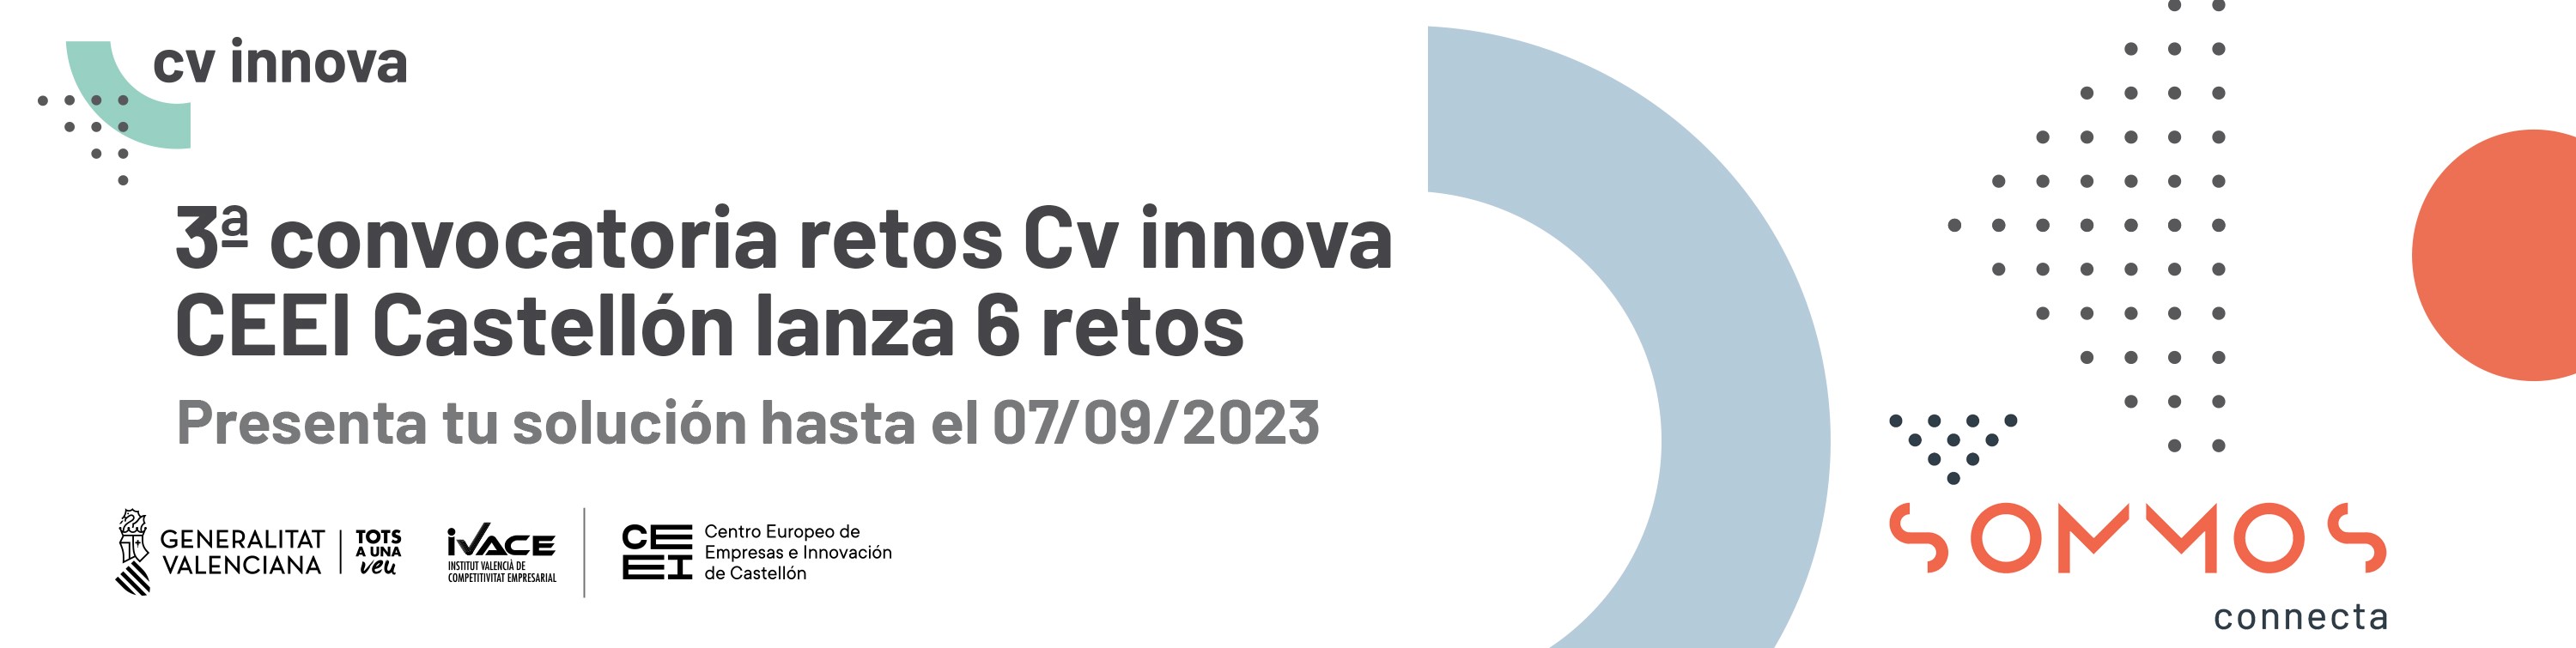 Banner CV innova CS 23 alargado